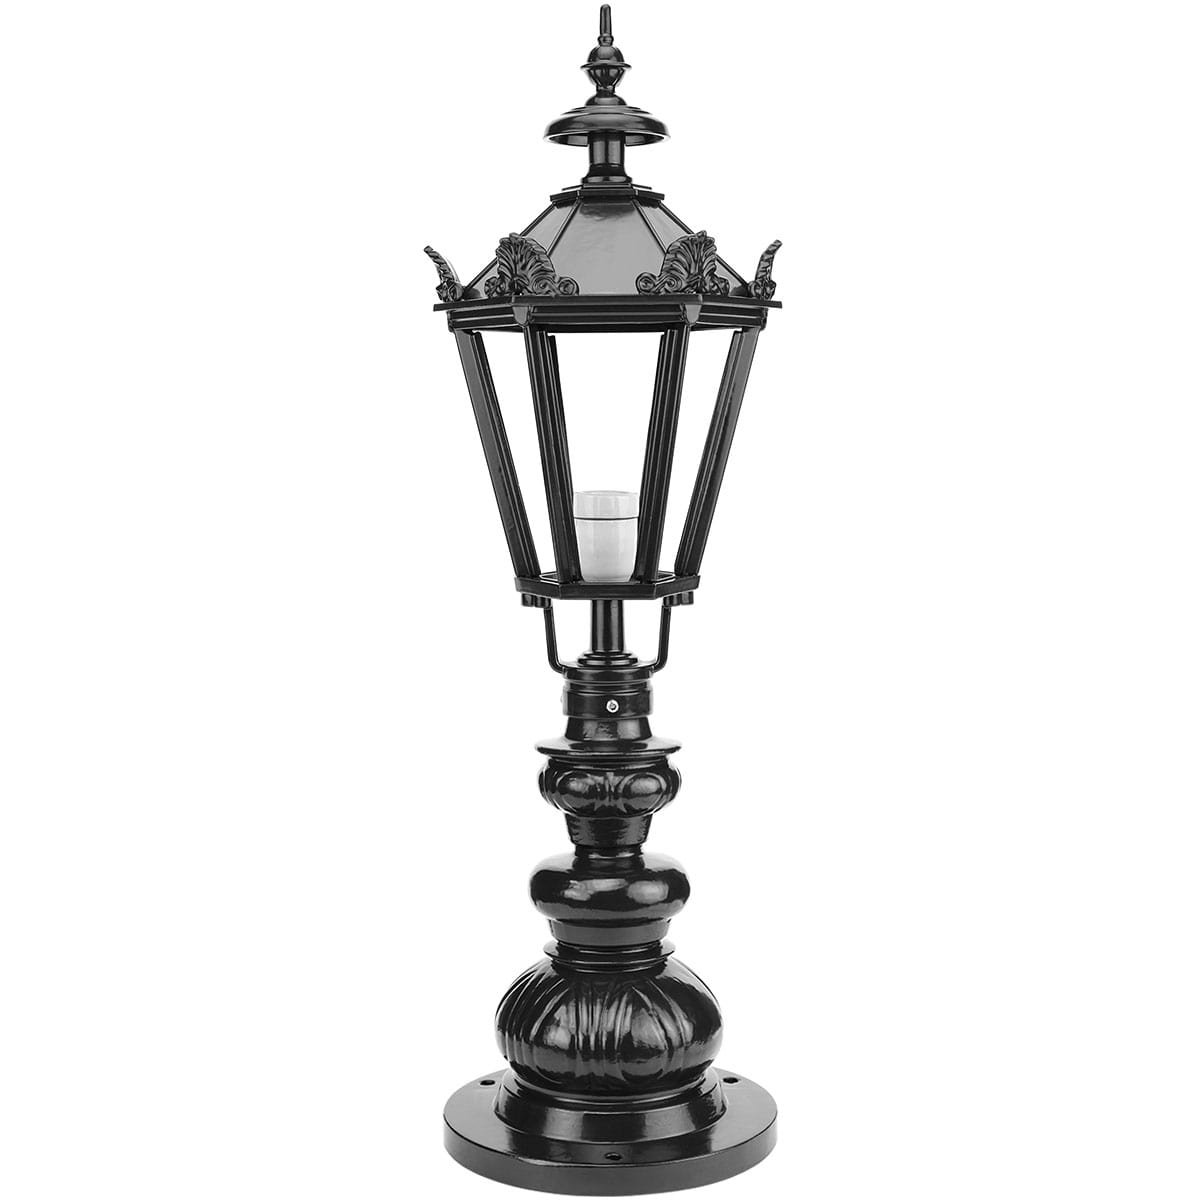 Gatelampe De Hoef mit kronen - 83 cm